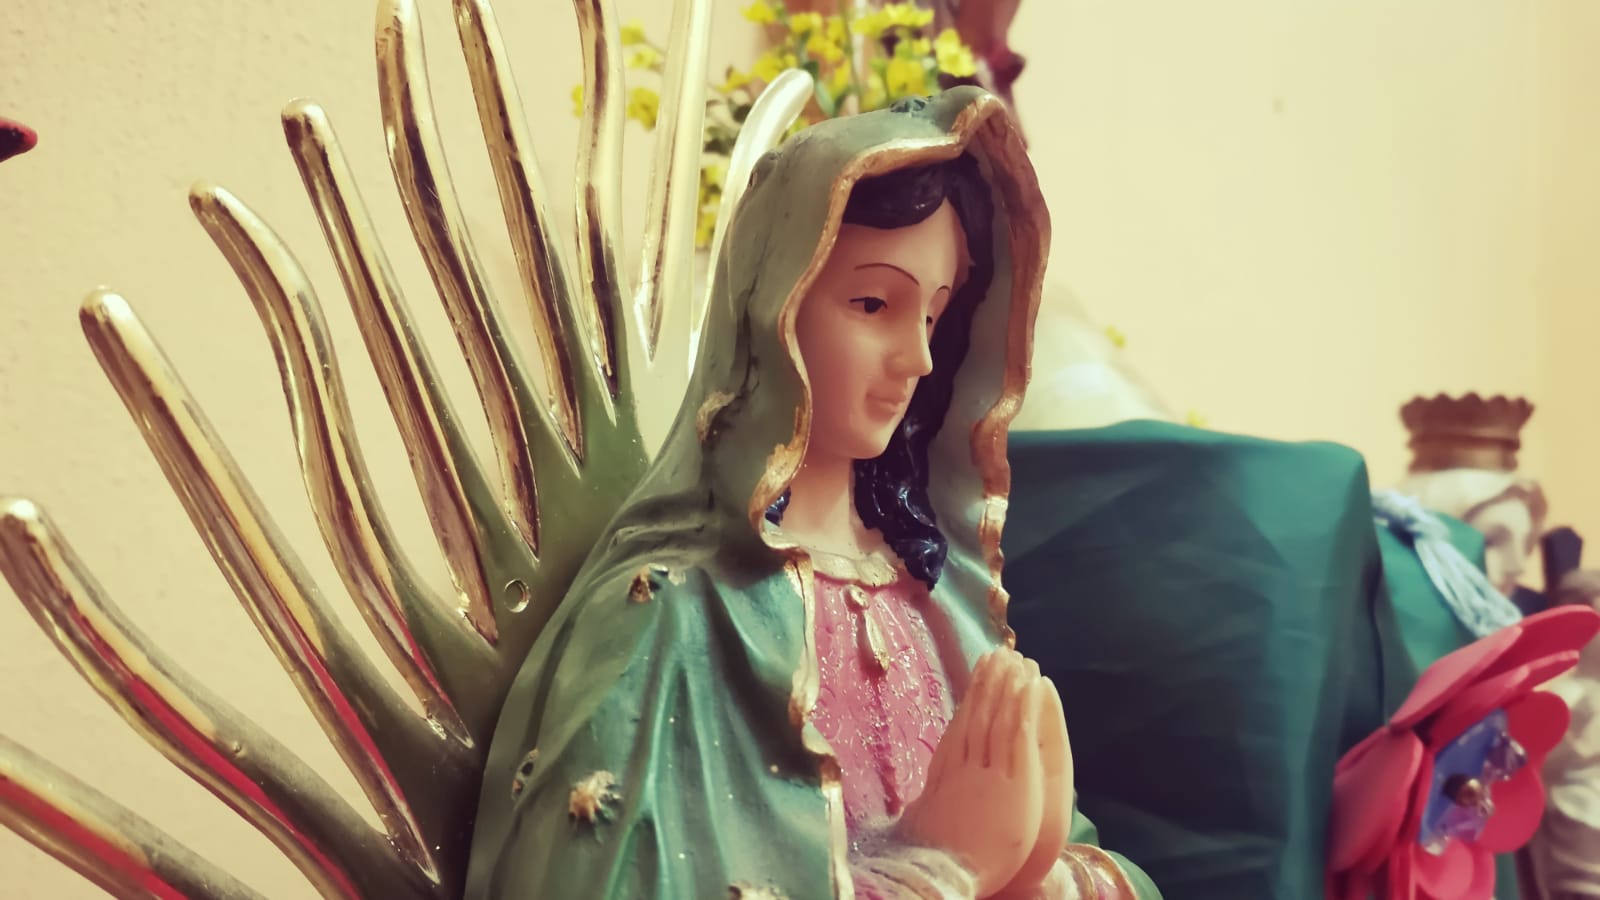 Imagen de la Virgen de Guadalupe